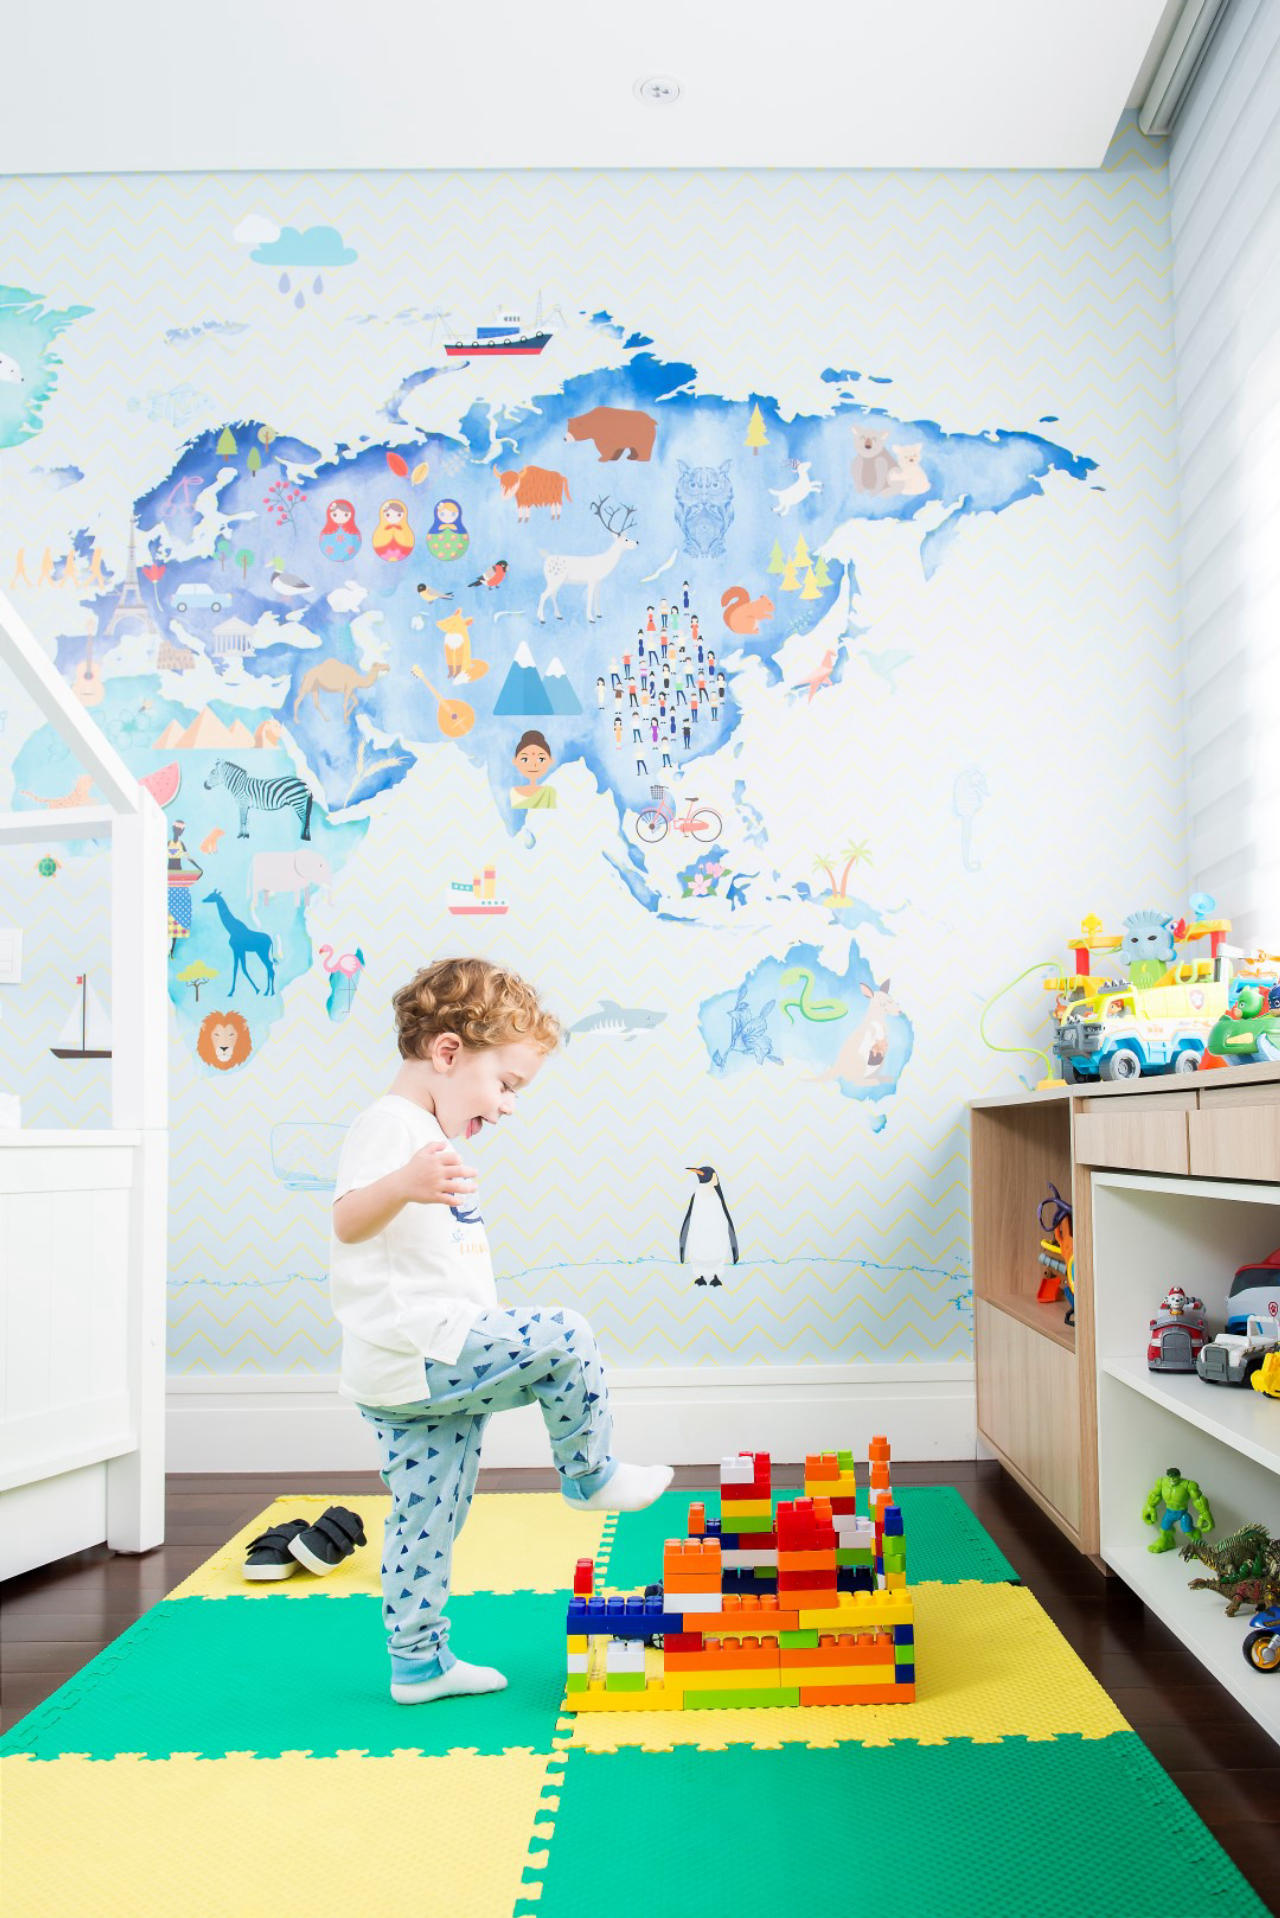 Pietro interage com o quarto onde a pintura de um mapa mundi fez toda a diferença.<br>Foto: Letícia Akemi / Gazeta do Povo